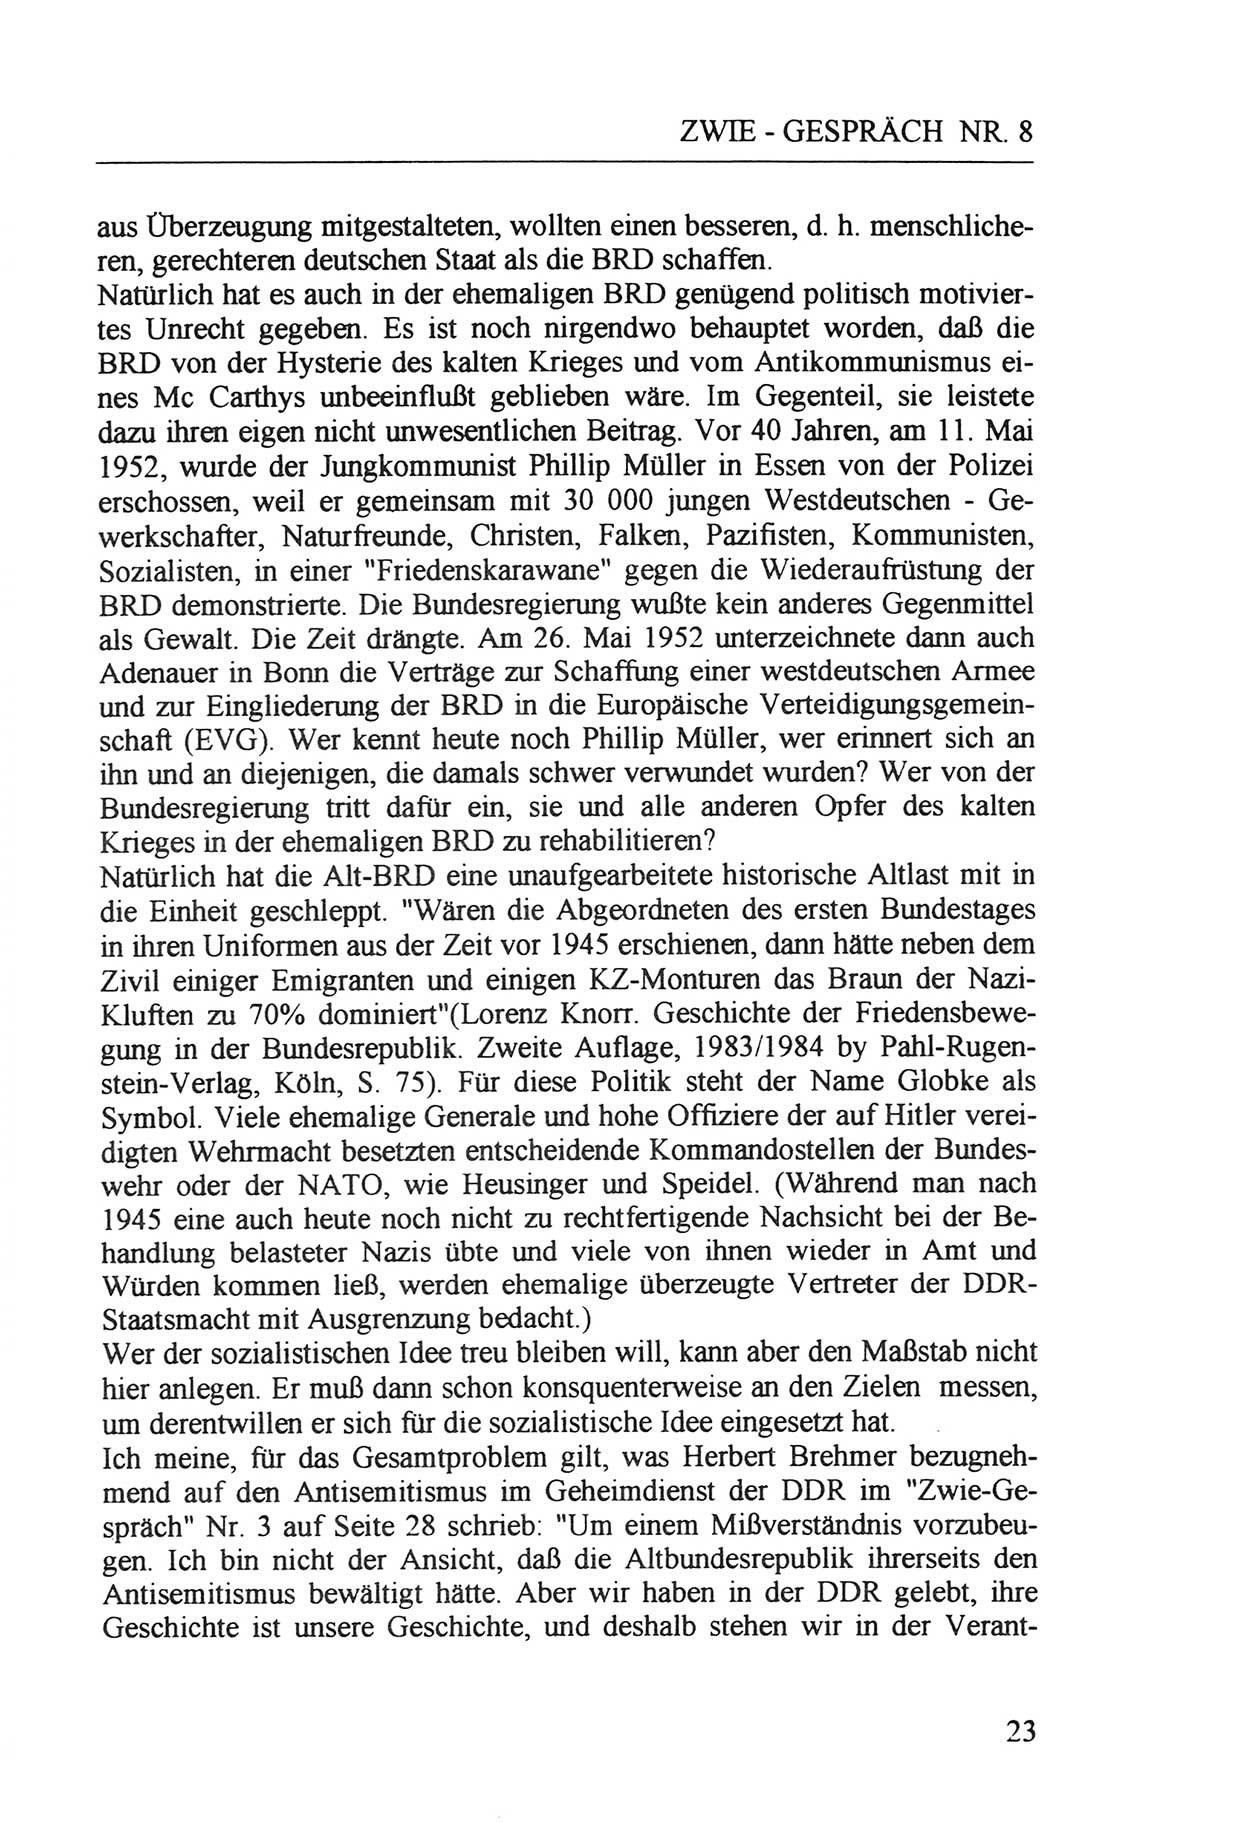 Zwie-Gespräch, Beiträge zur Aufarbeitung der Staatssicherheits-Vergangenheit [Deutsche Demokratische Republik (DDR)], Ausgabe Nr. 8, Berlin 1992, Seite 23 (Zwie-Gespr. Ausg. 8 1992, S. 23)